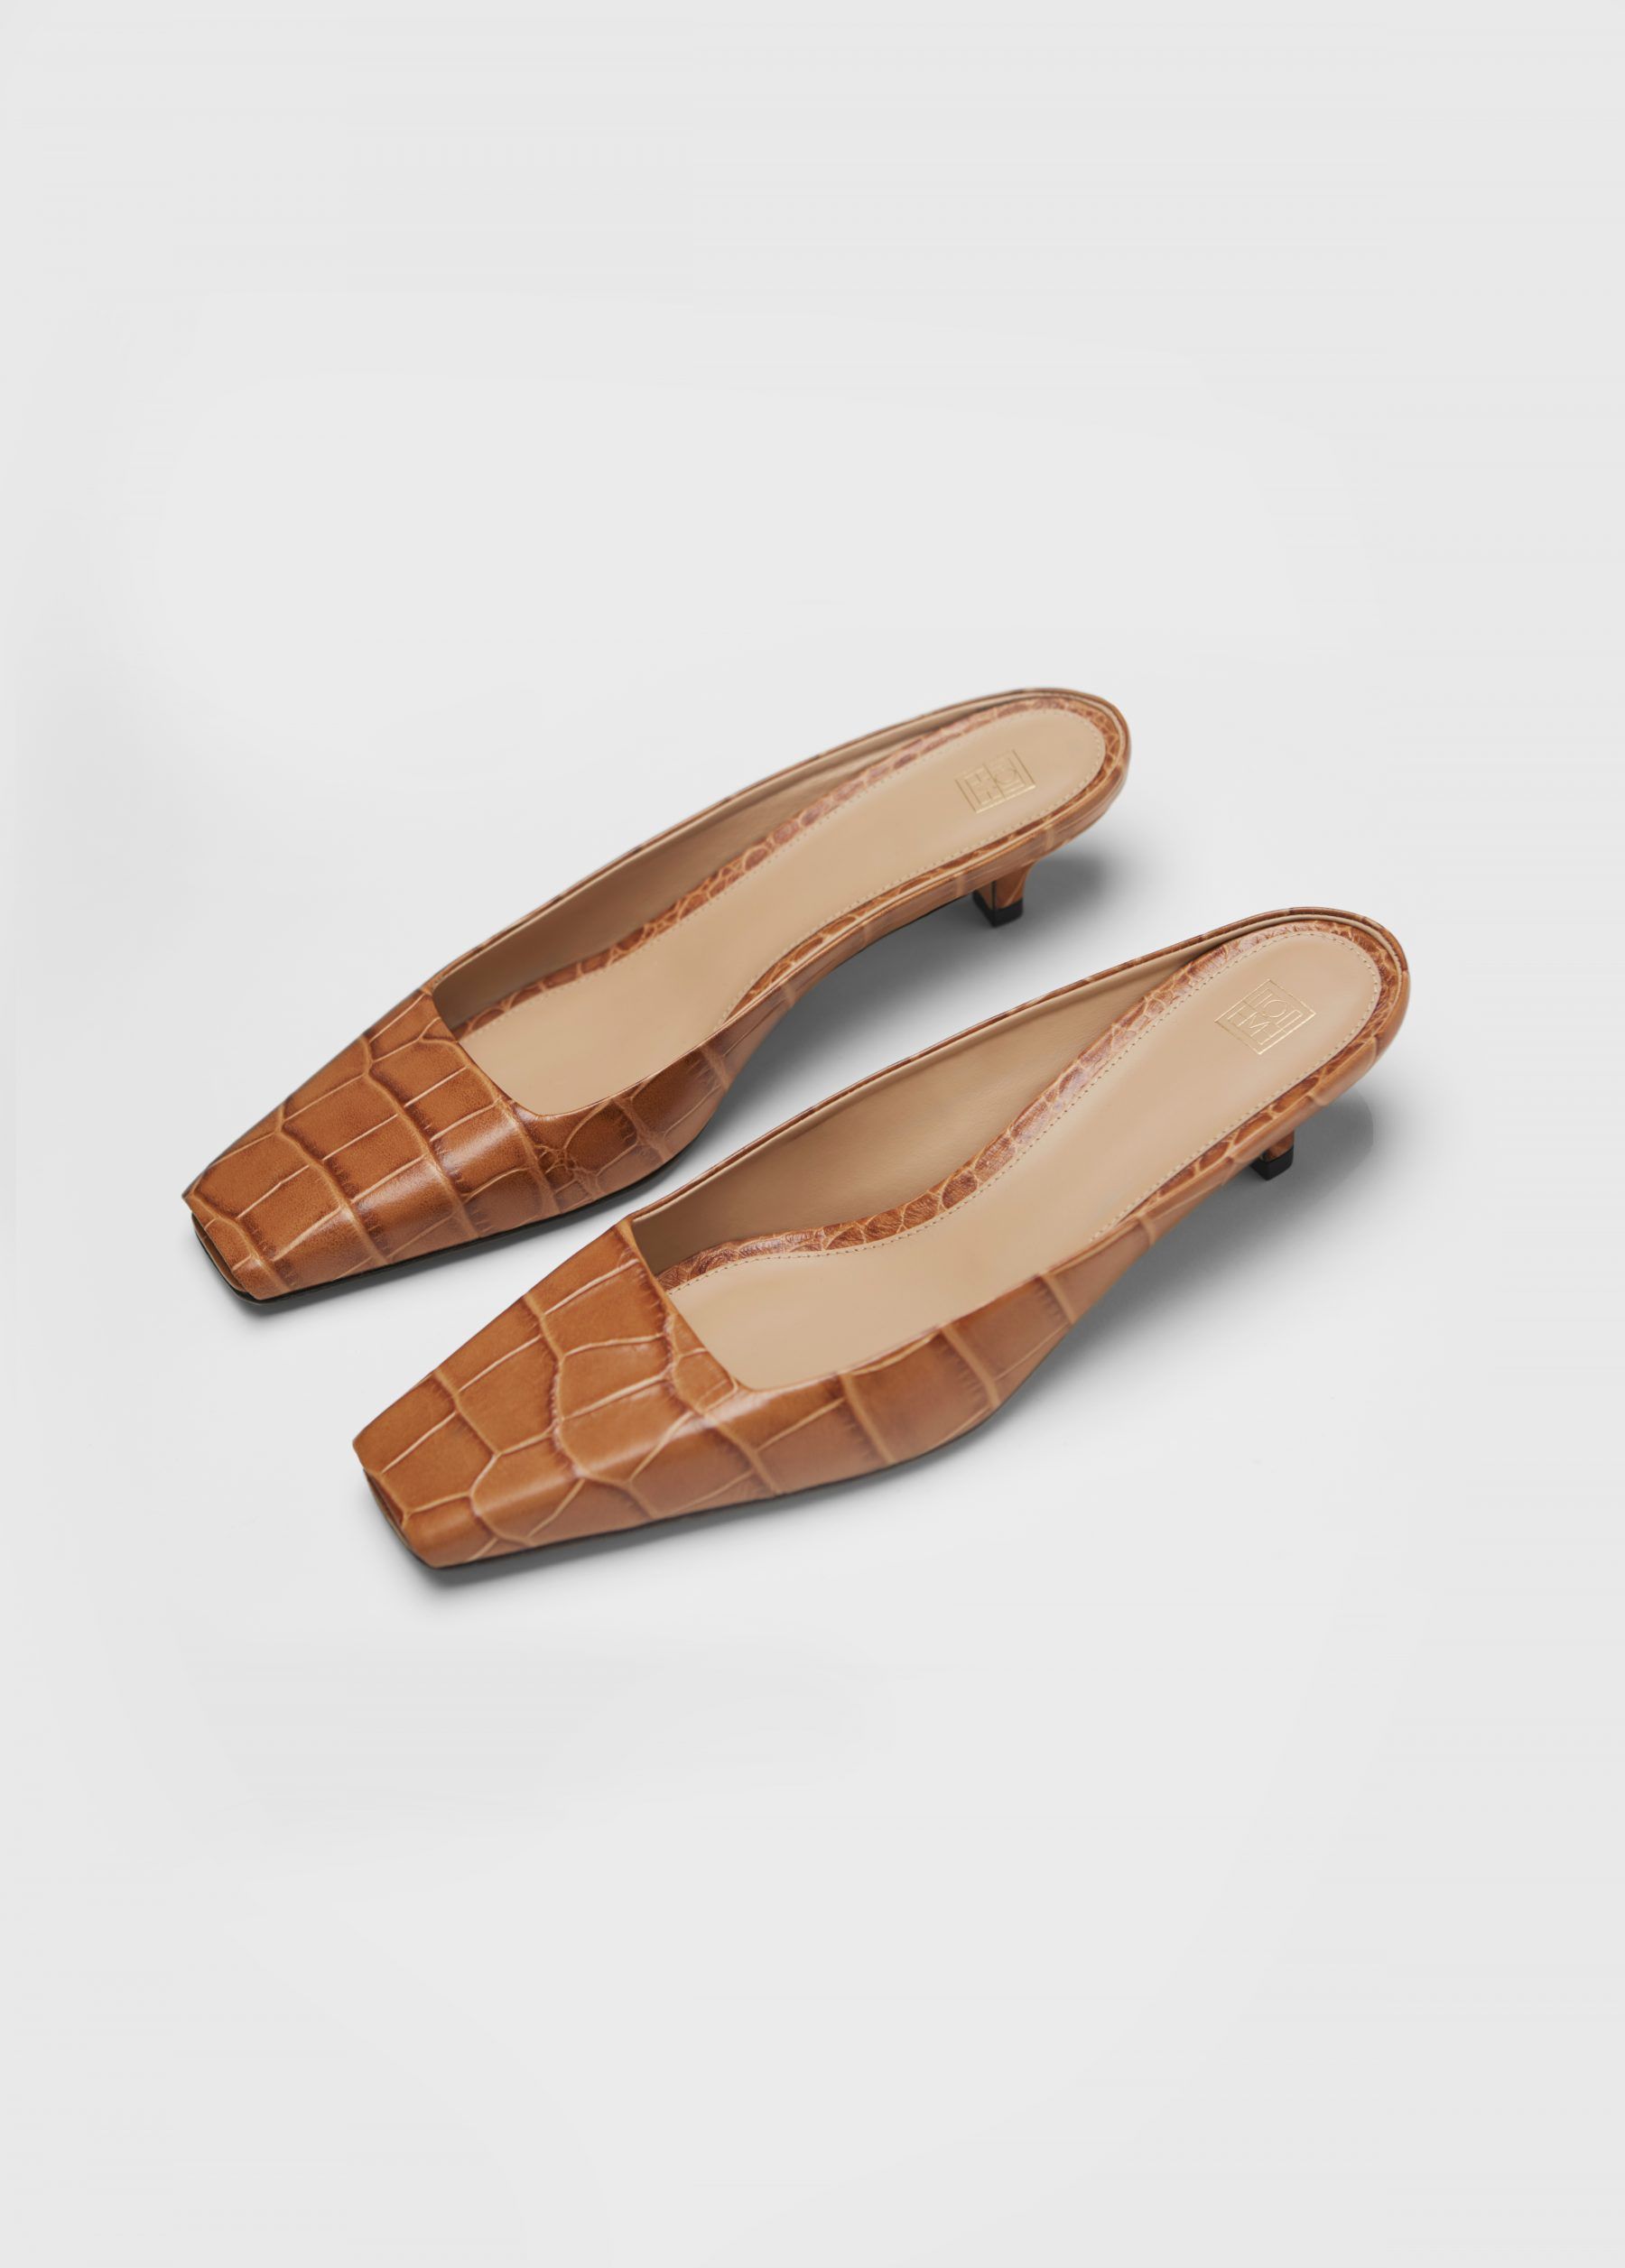 diseño pase a ver ventaja Las sandalias y zapatos de punta cuadrada - Este es el calzado que elevará  todos tus looks